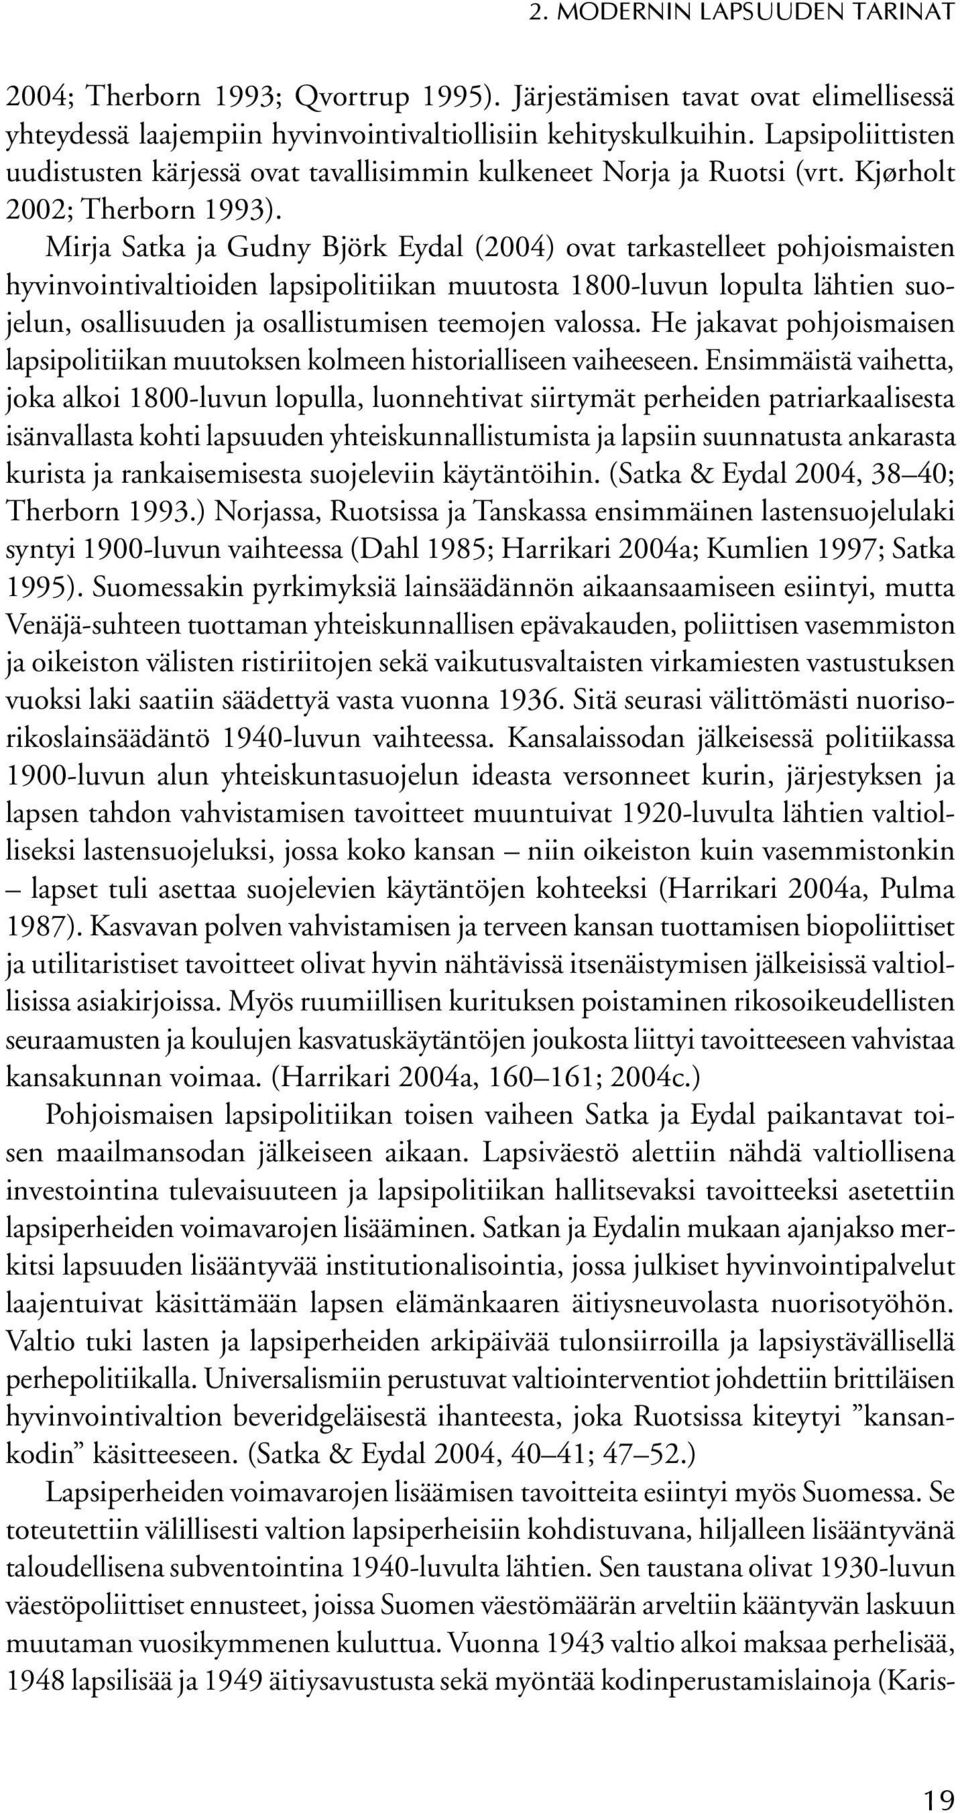 Mirja Satka ja Gudny Björk Eydal (2004) ovat tarkastelleet pohjoismaisten hyvinvointivaltioiden lapsipolitiikan muutosta 1800-luvun lopulta lähtien suojelun, osallisuuden ja osallistumisen teemojen